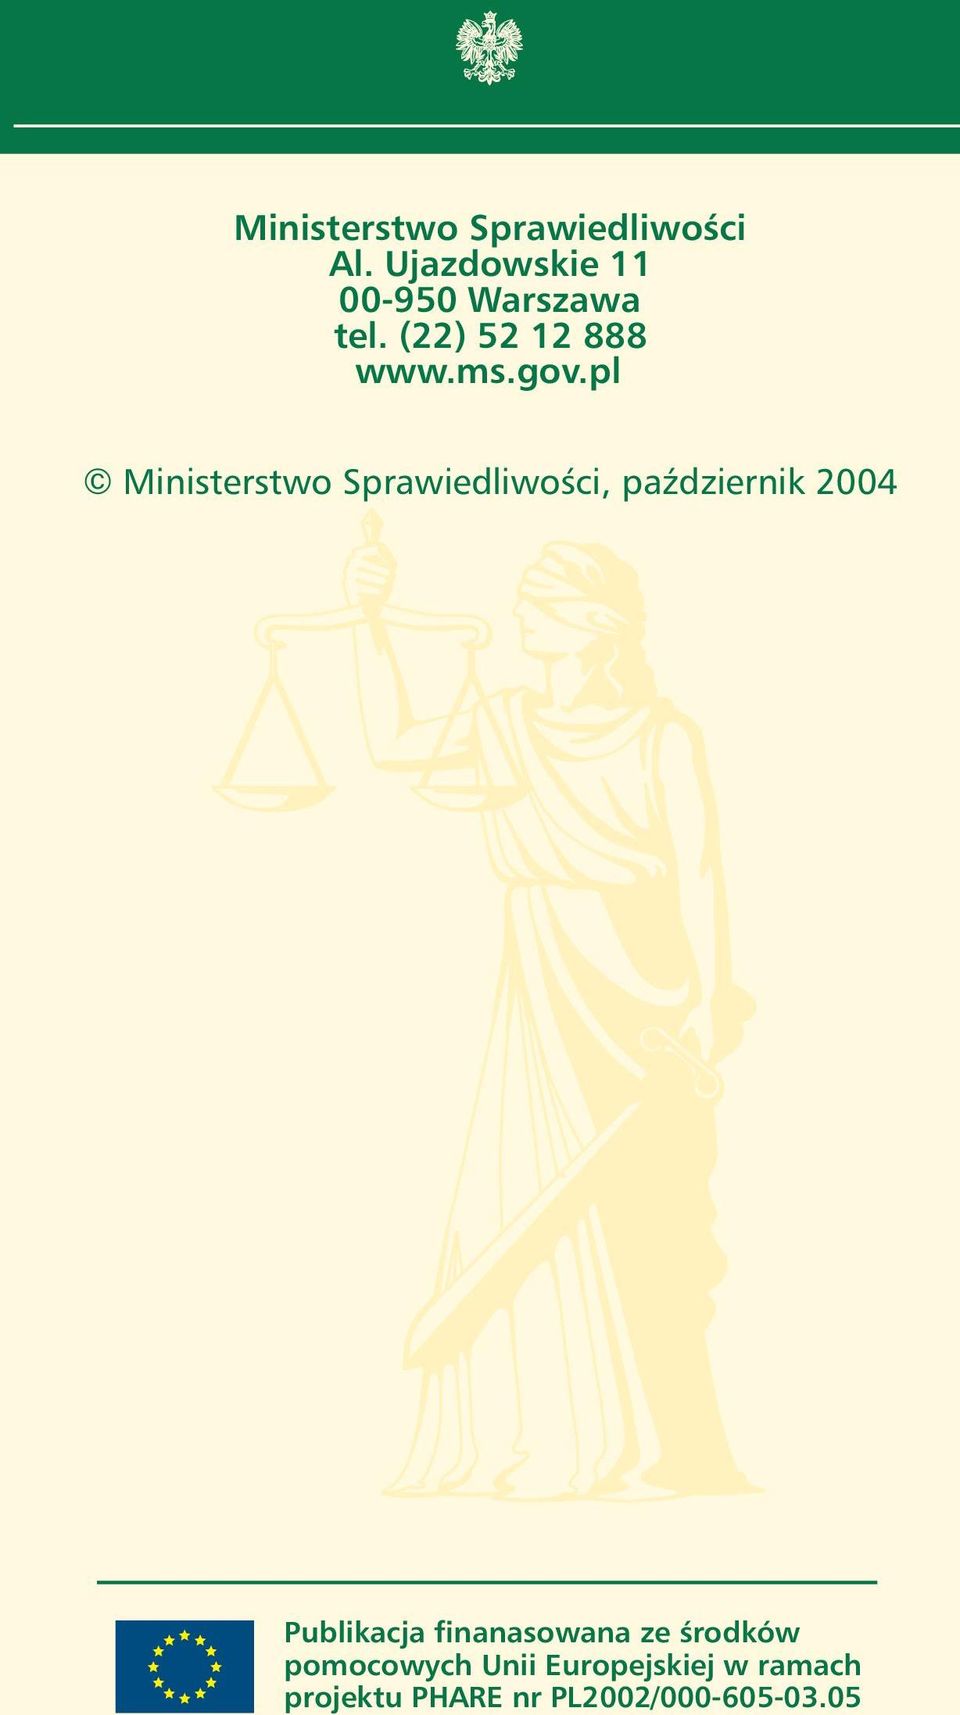 pl Ministerstwo SprawiedliwoÊci, paêdziernik 2004 Publikacja